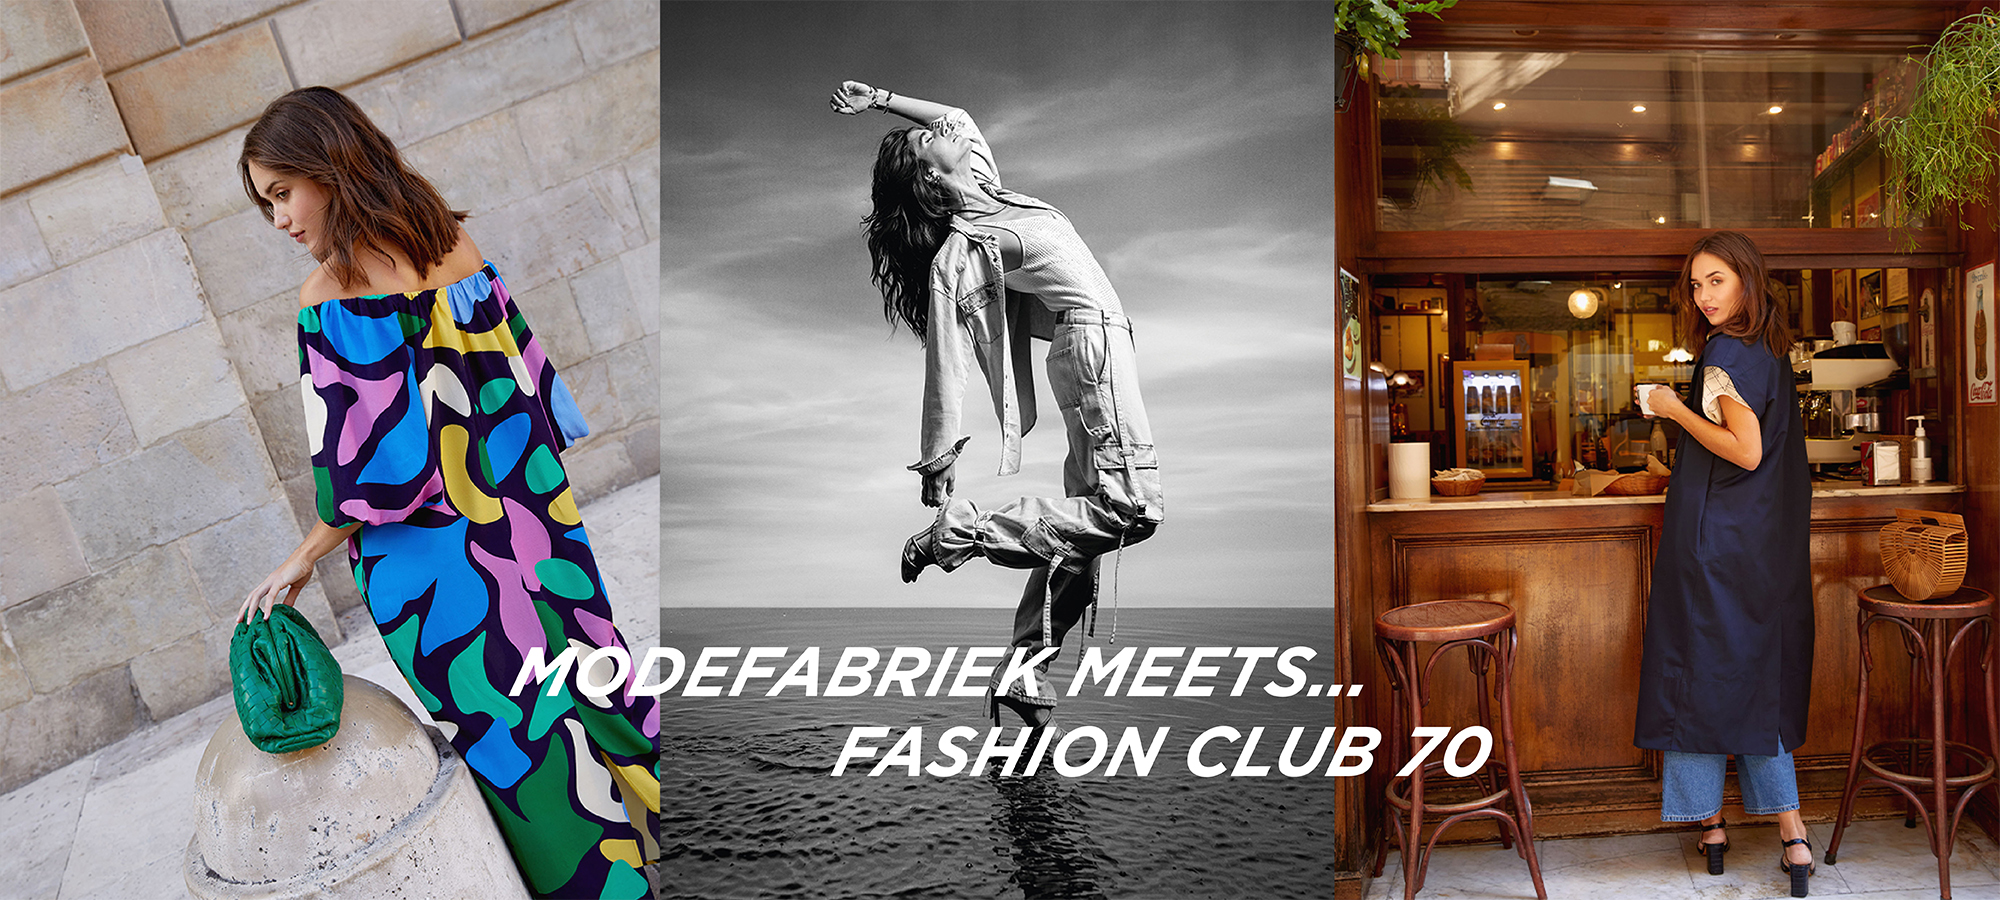 Modefabriek meets… Fashion Club 70